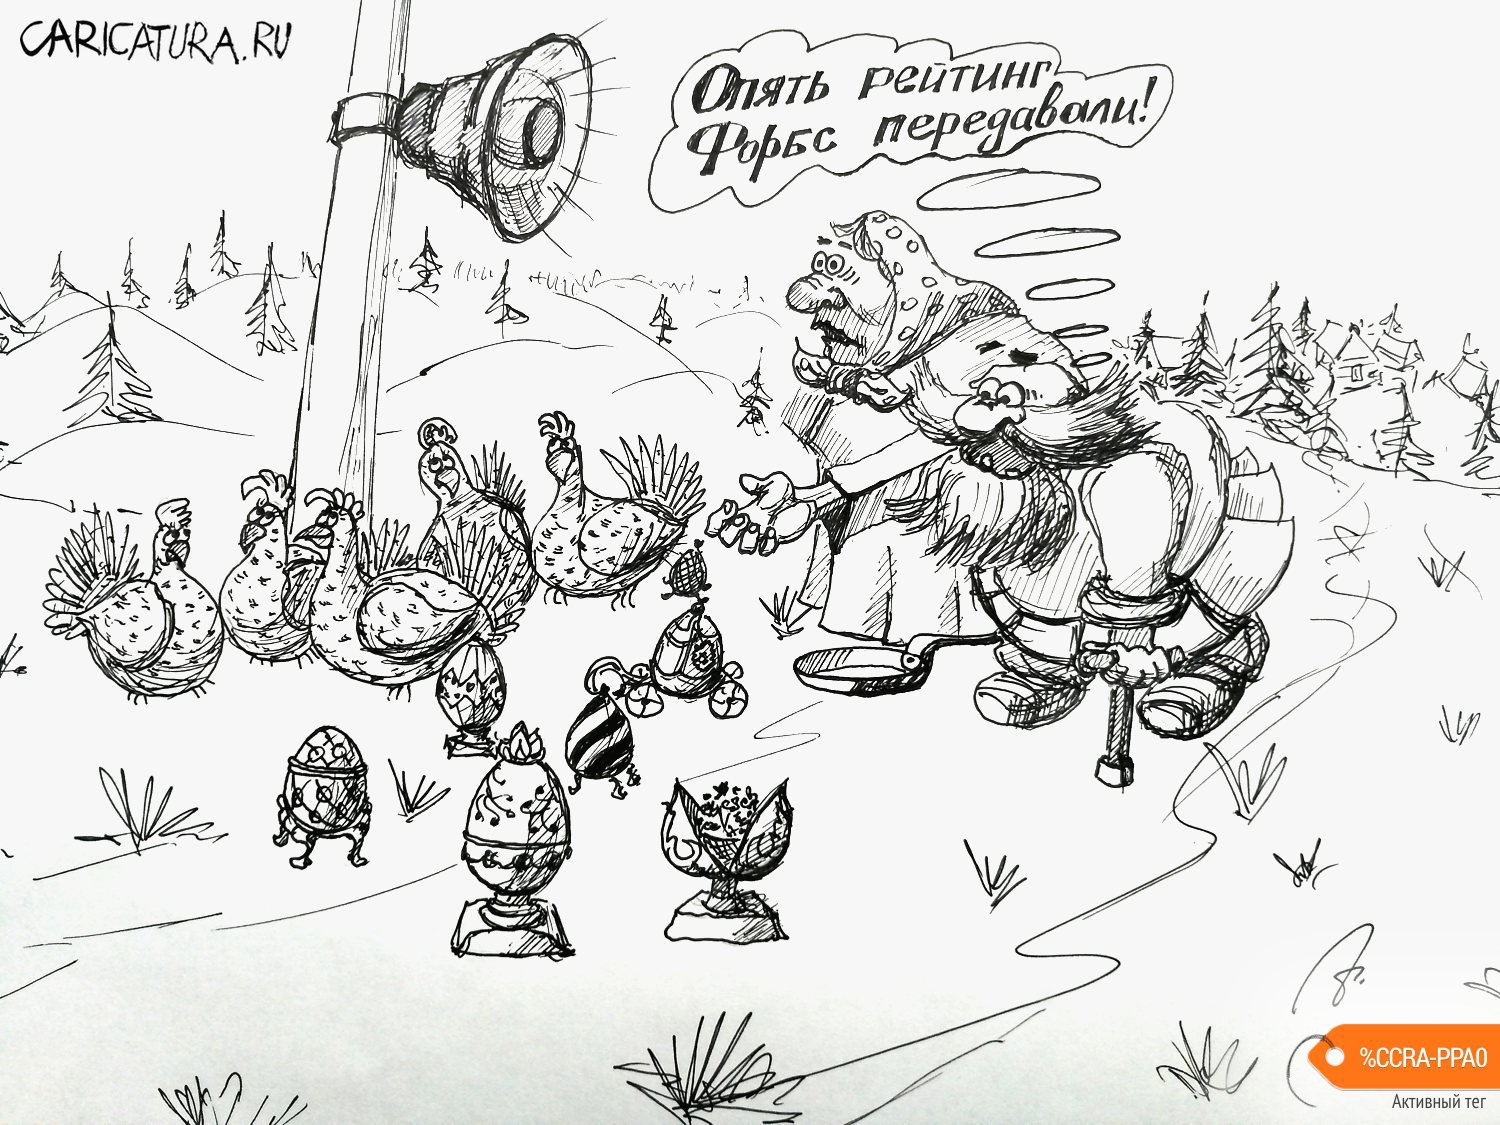 Карикатура "Рейтинг Форбс", Андрей Тихомиров